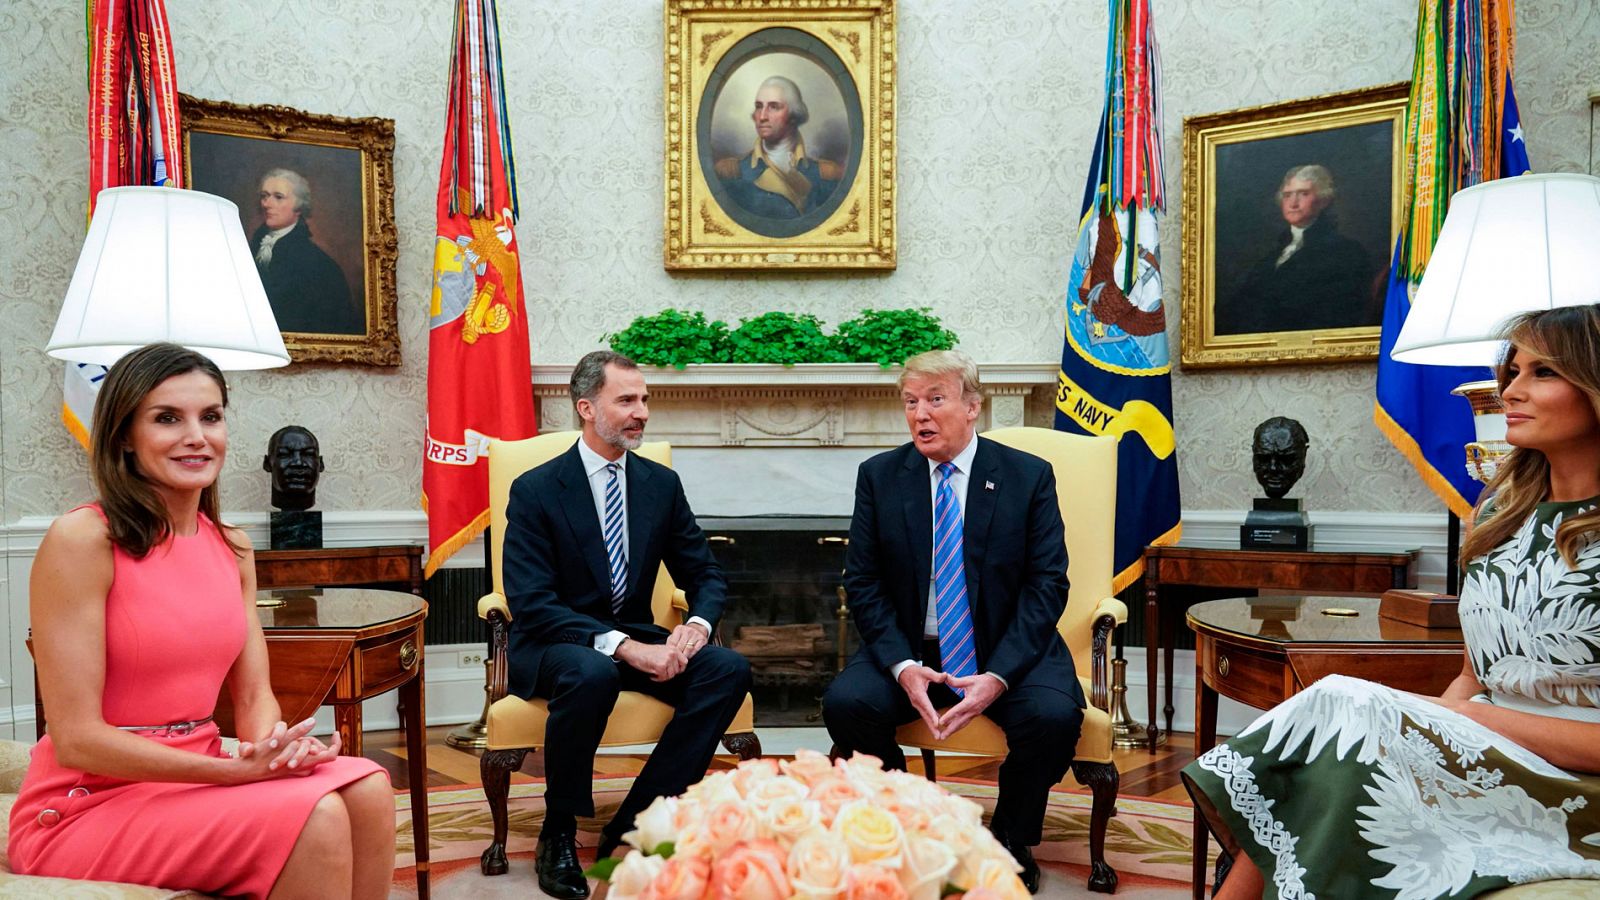 El presidente de Estados Unidos, Donald Trump, dijo hoy que le "gustaría" viajar a España durante la recepción en la Casa Blanca al rey Felipe VI y la reina Letizia, a la vez que alabó la "excelente" relación comercial y de defensa bilateral. "Sí, ir